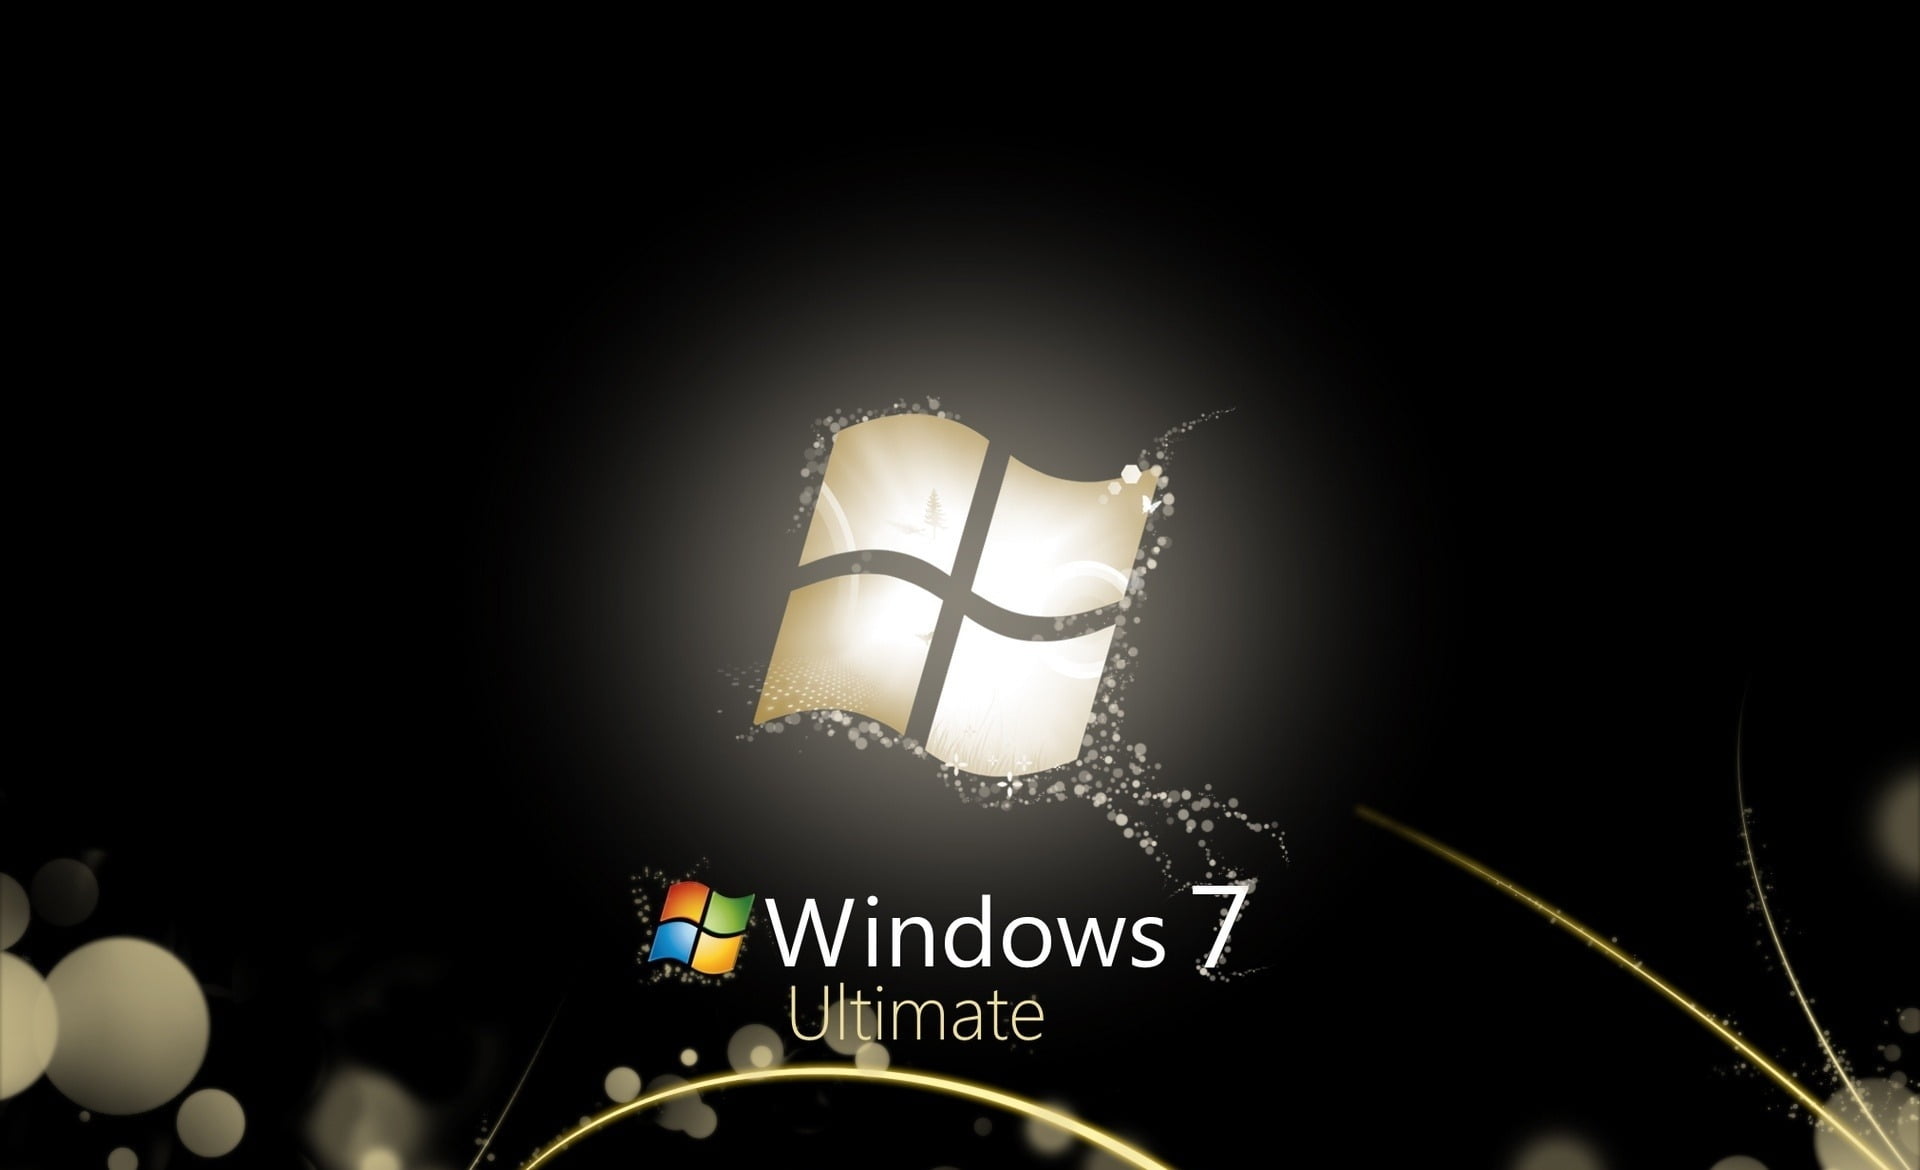 Windows 7 Ultimate là phiên bản hệ điều hành tốt nhất cho máy tính của bạn và hình nền của nó cũng không kém phần hoàn hảo. Tận hưởng những bức ảnh tuyệt đẹp đến từ toàn thế giới.